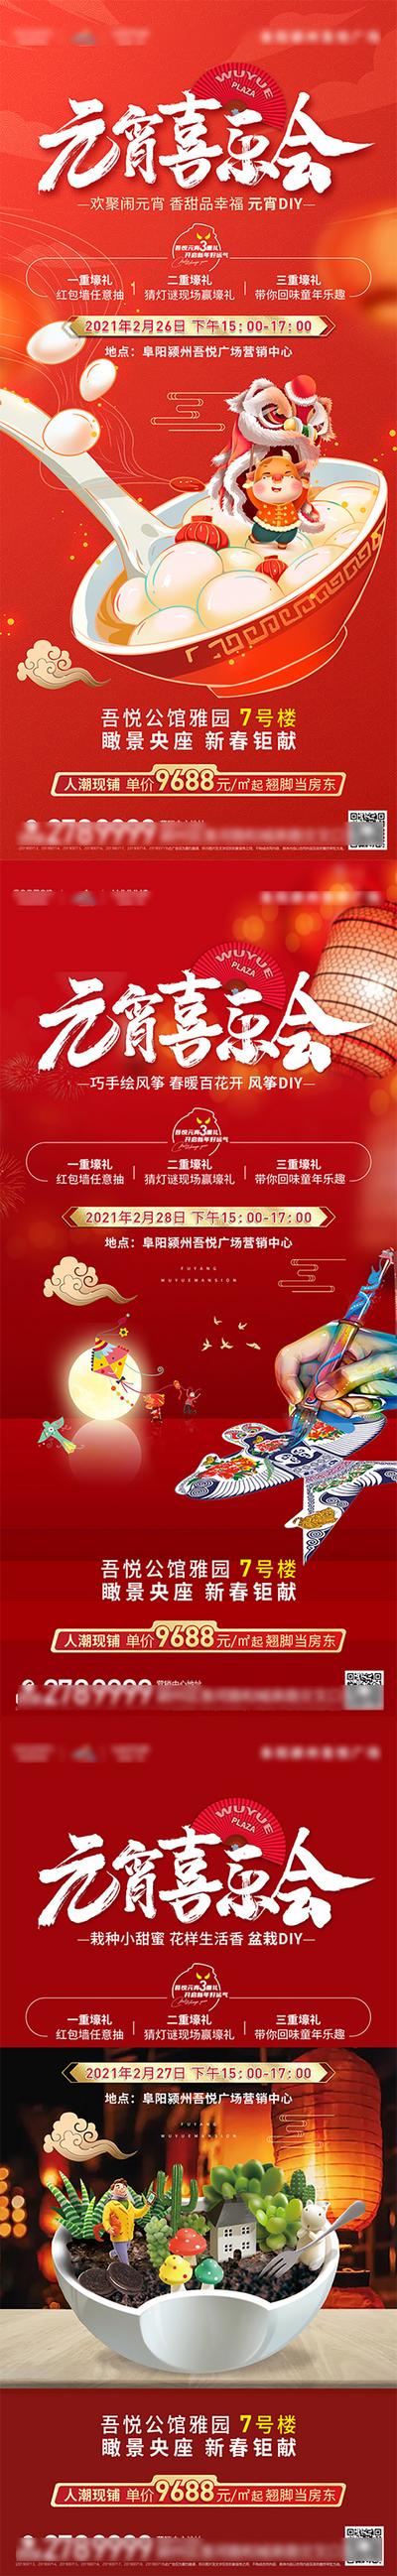 南门网 海报 房地产 元宵节 中国传统节日 活动 风筝 DIY 